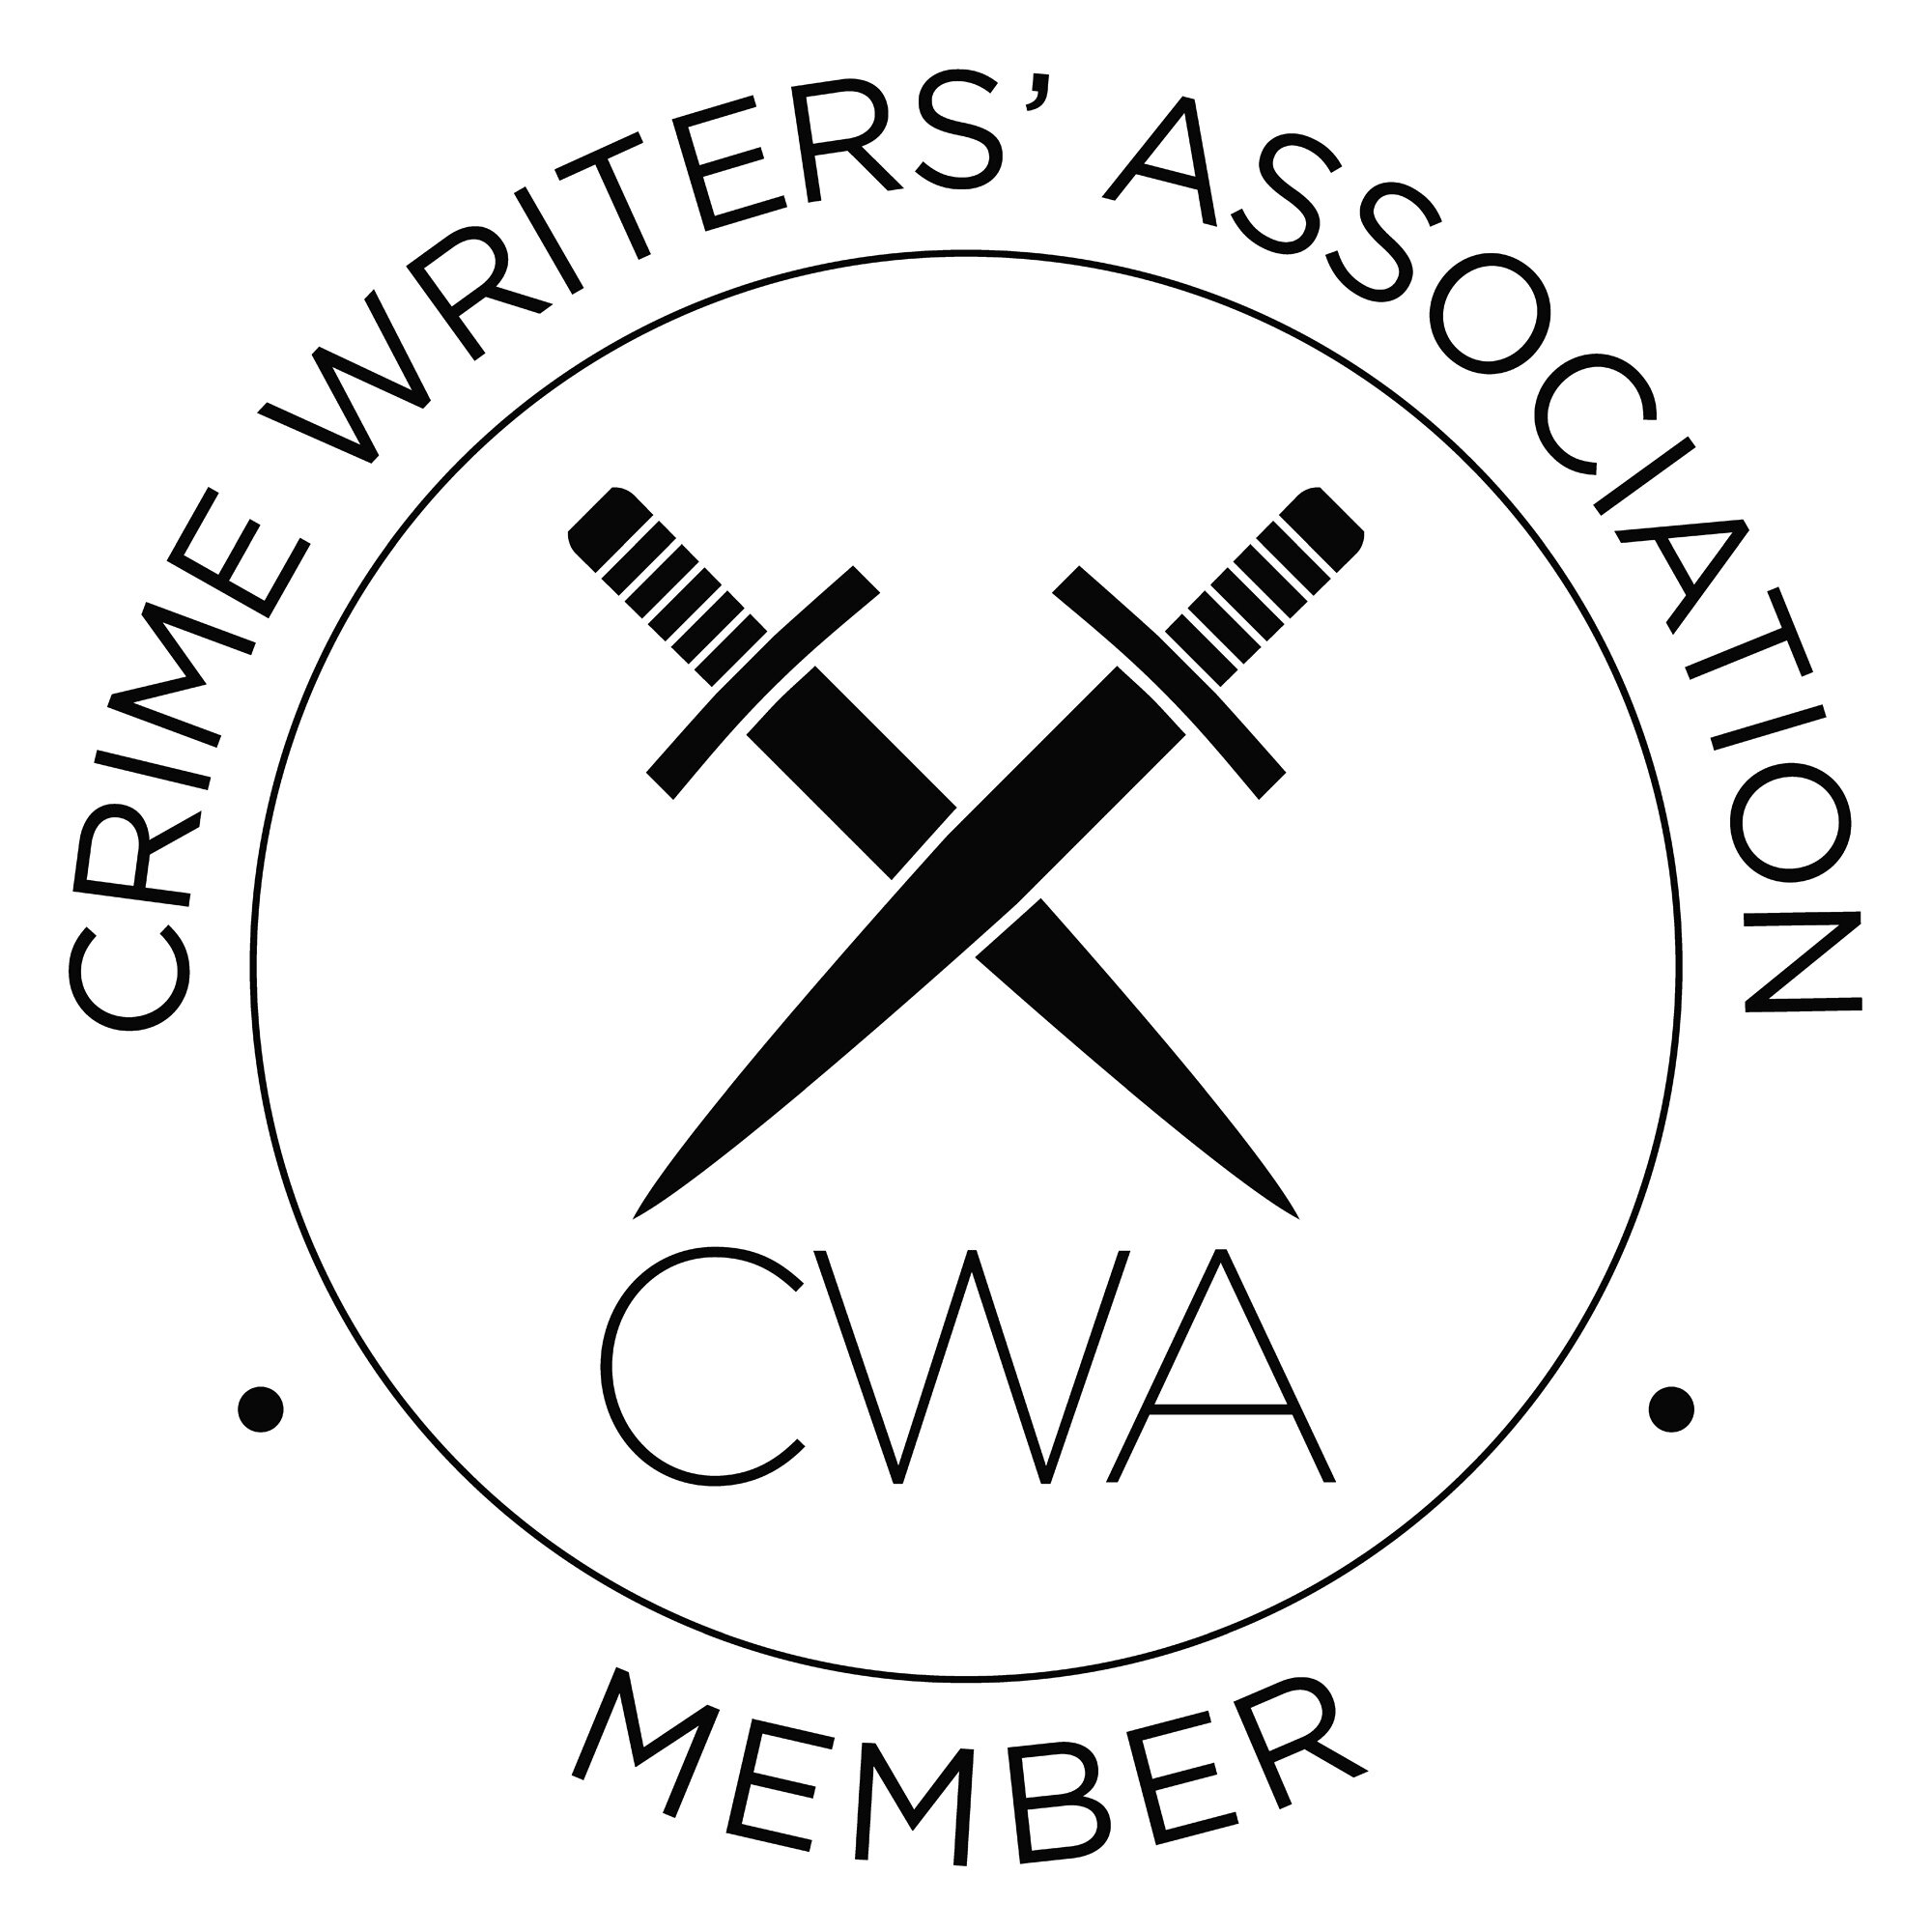 cwa-logo-member.jpg